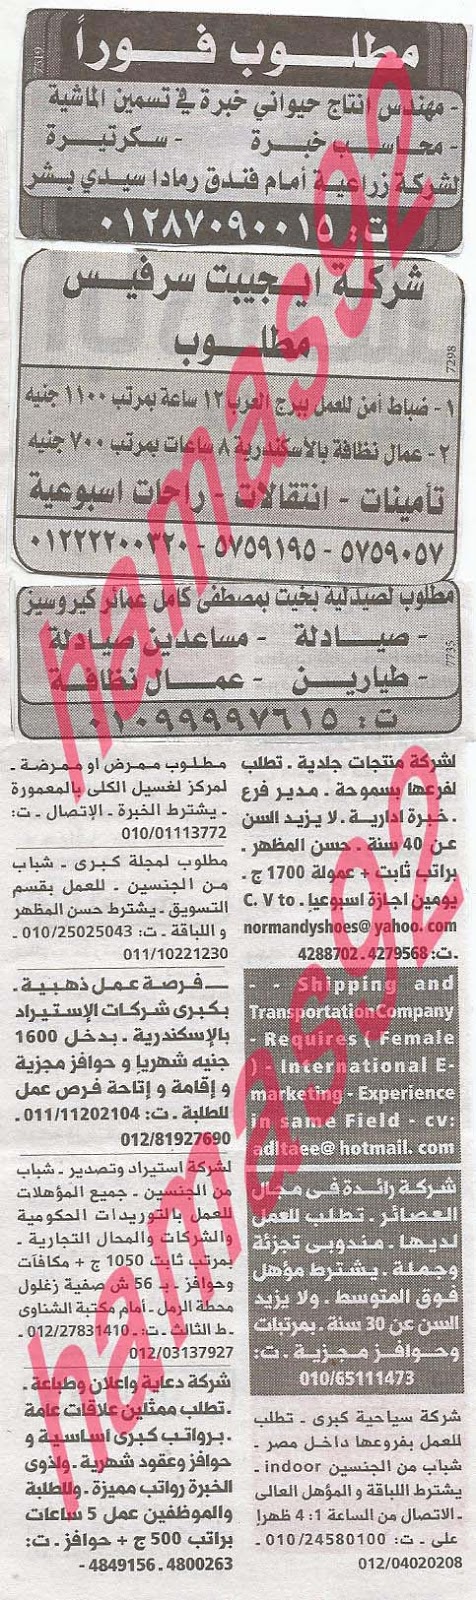 وظائف خالية فى جريدة الوسيط الاسكندرية السبت 24-08-2013 %D9%88+%D8%B3+%D8%B3+2